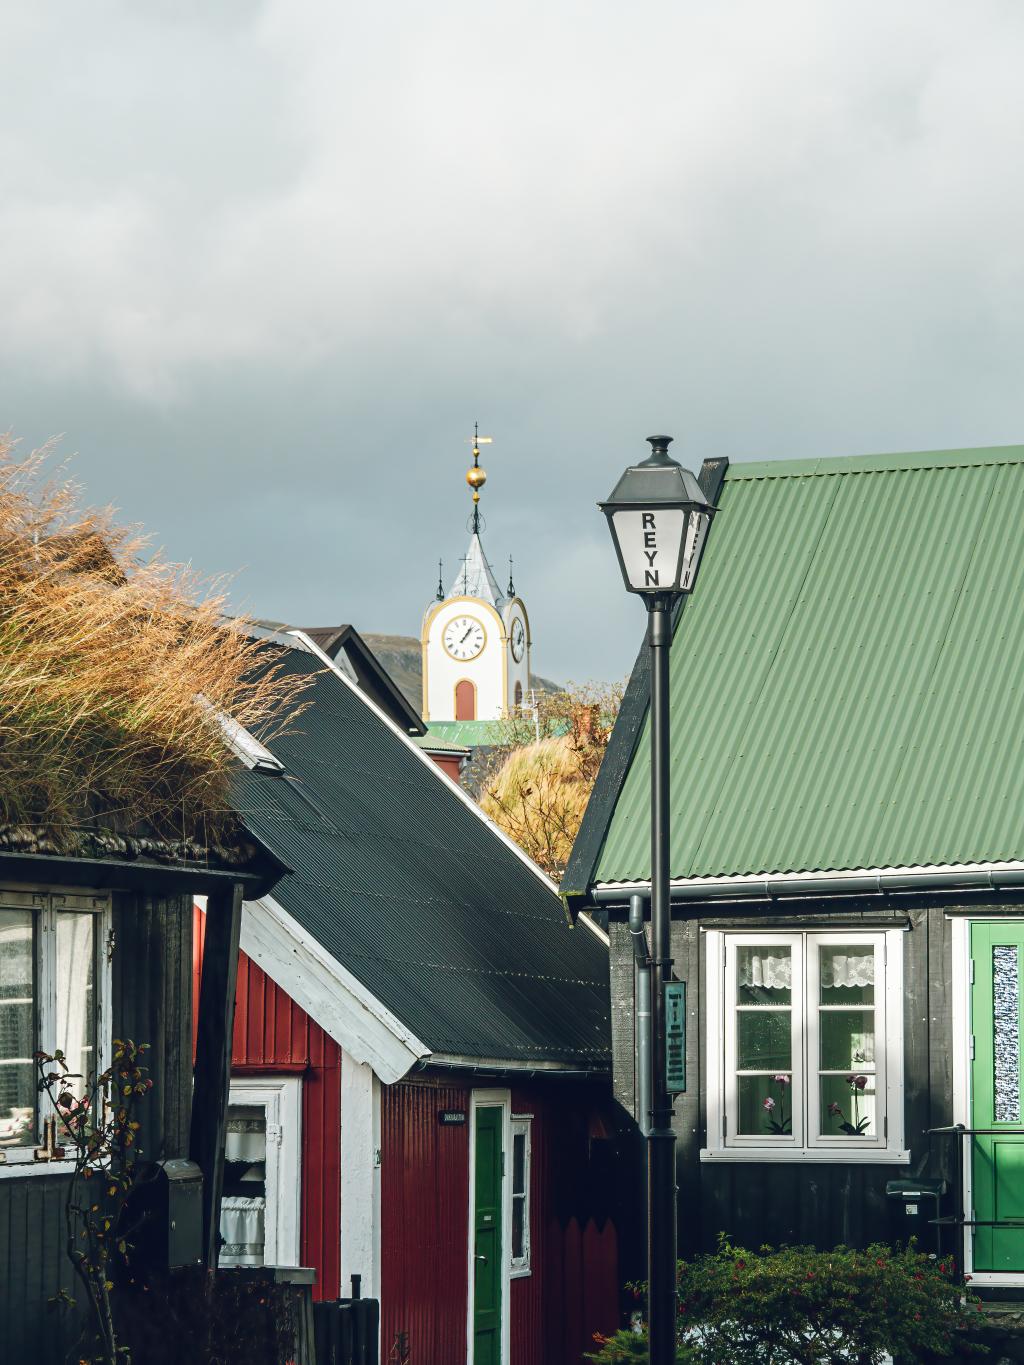 Houses in the capital, Tórshavn, in the Faroe Islands. By Daniel Villadsen / @dvphoto.dk